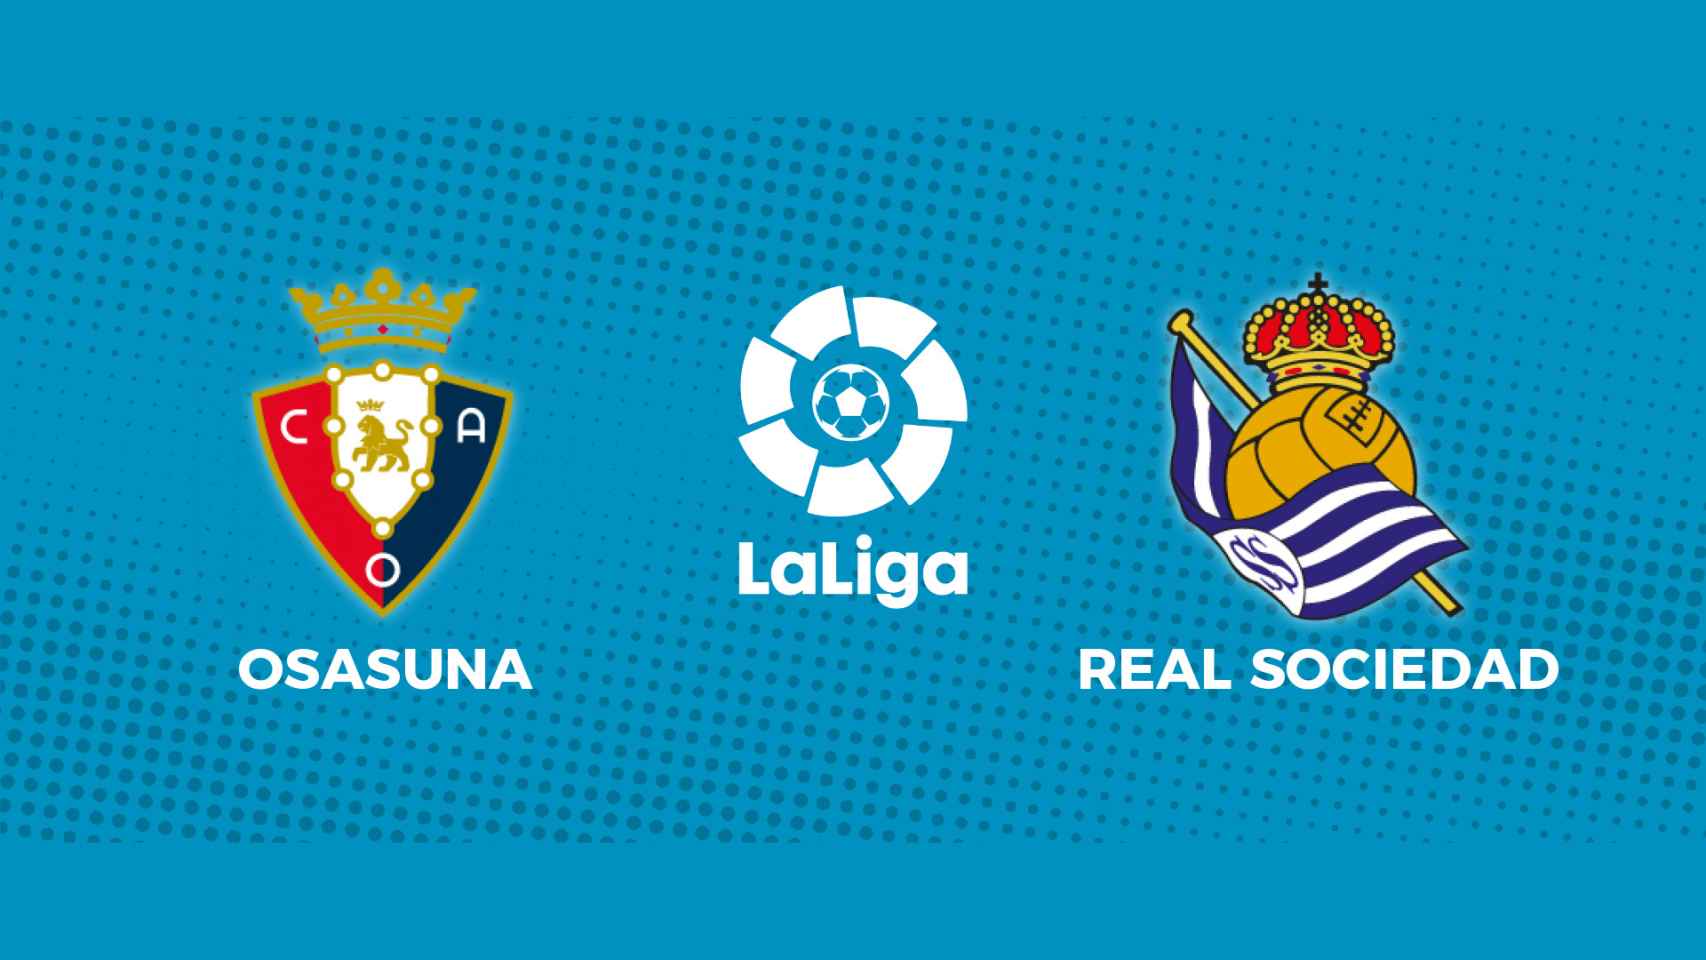 Osasuna - Real Sociedad, La Liga en directo